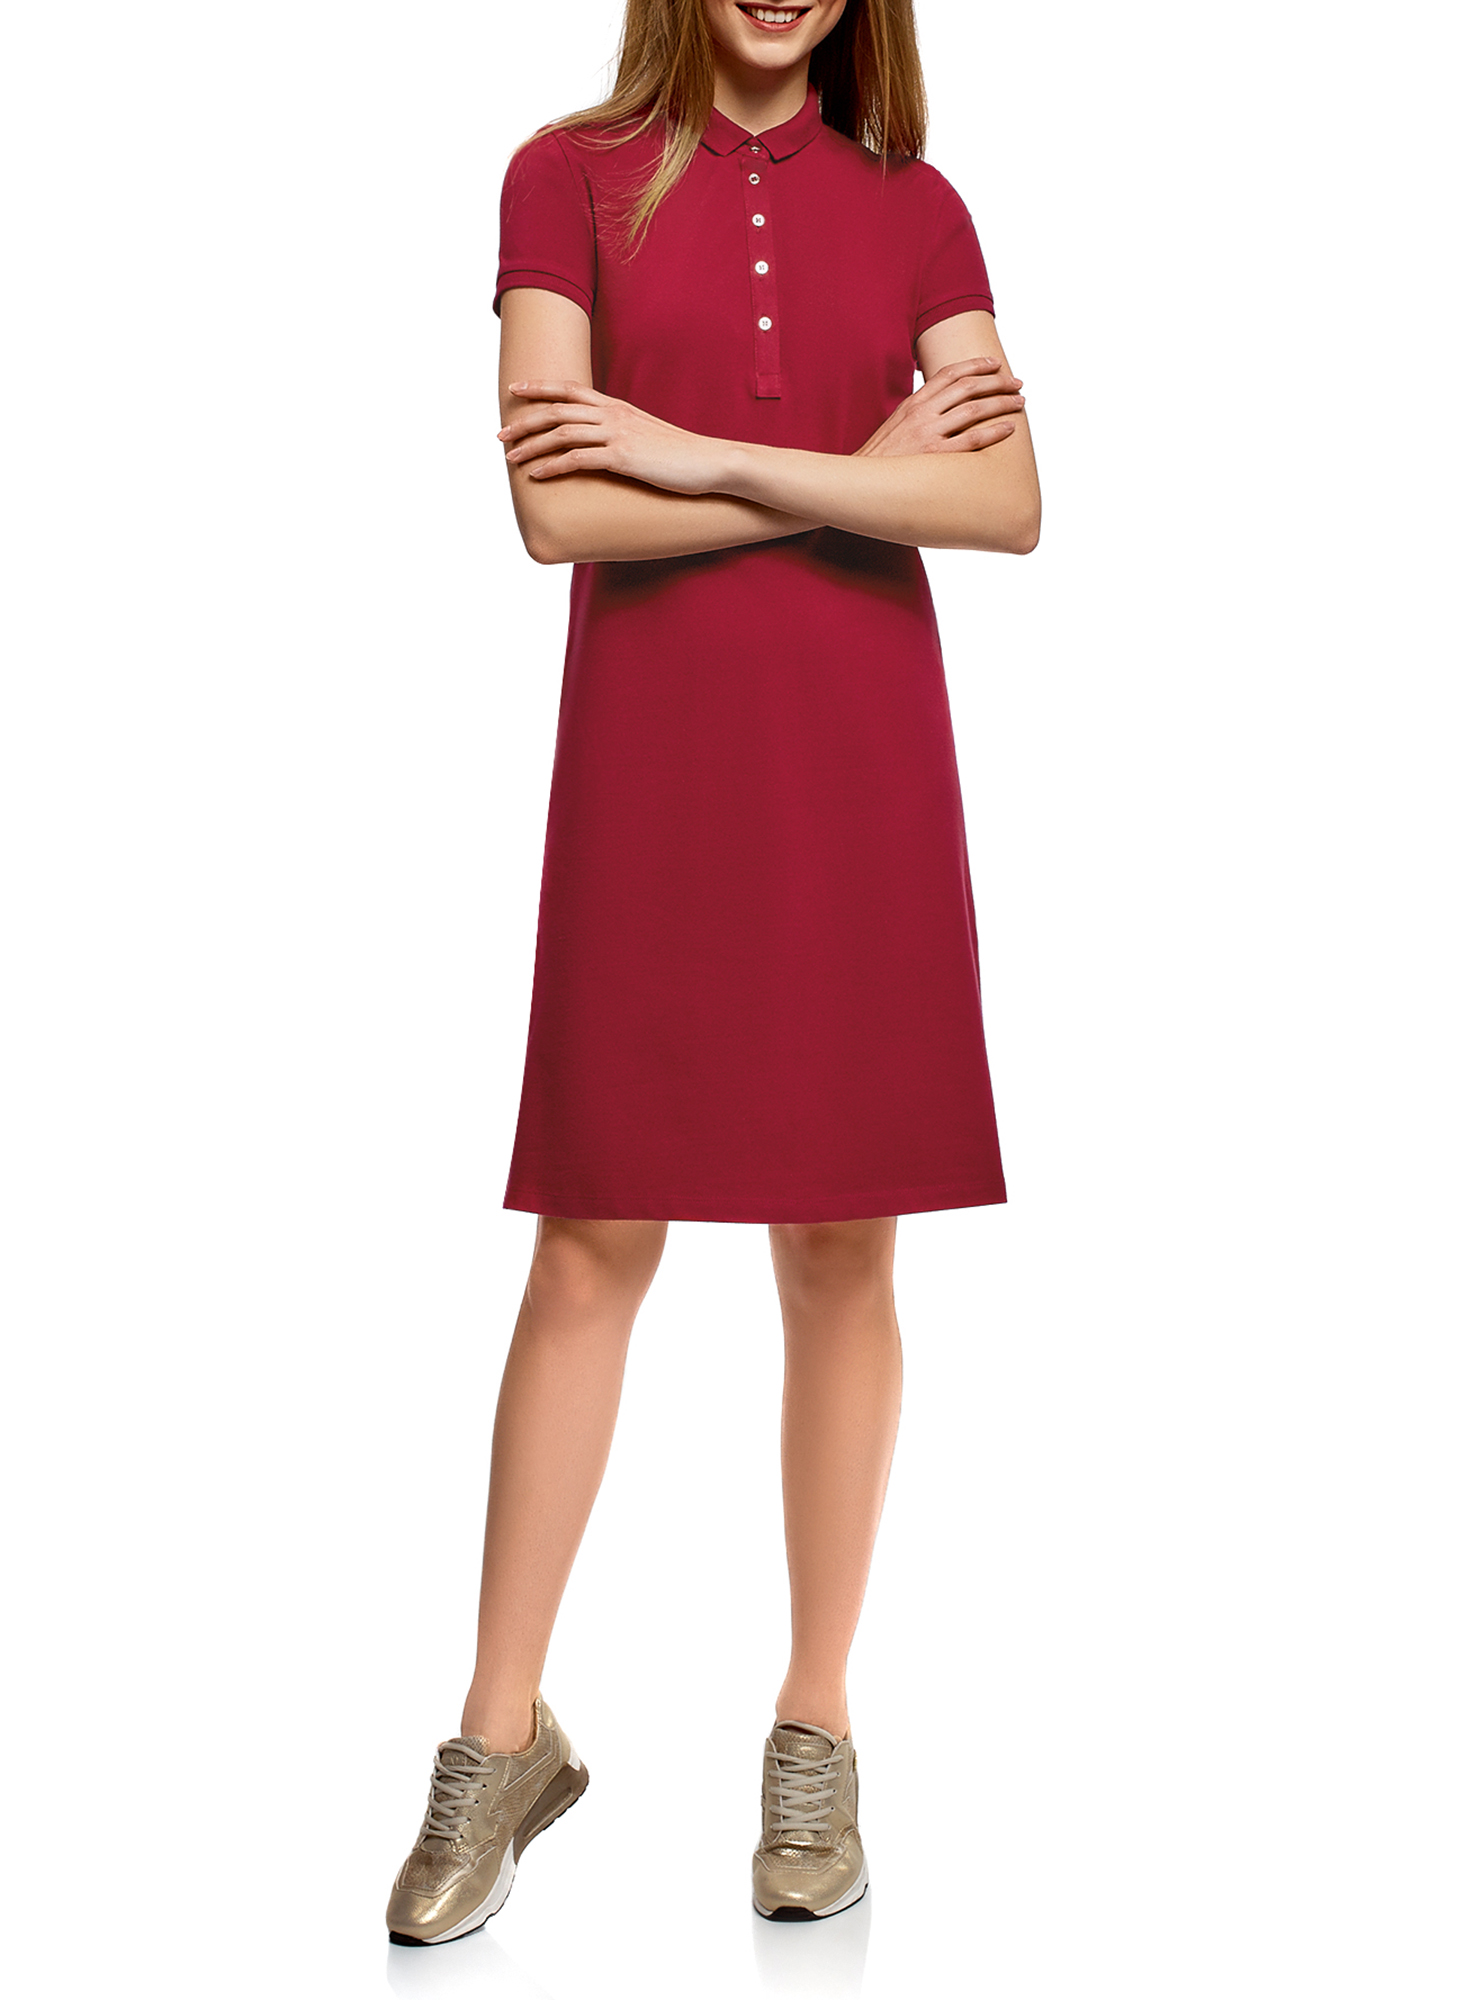 Платье женское oodji 24001118-4B красное S